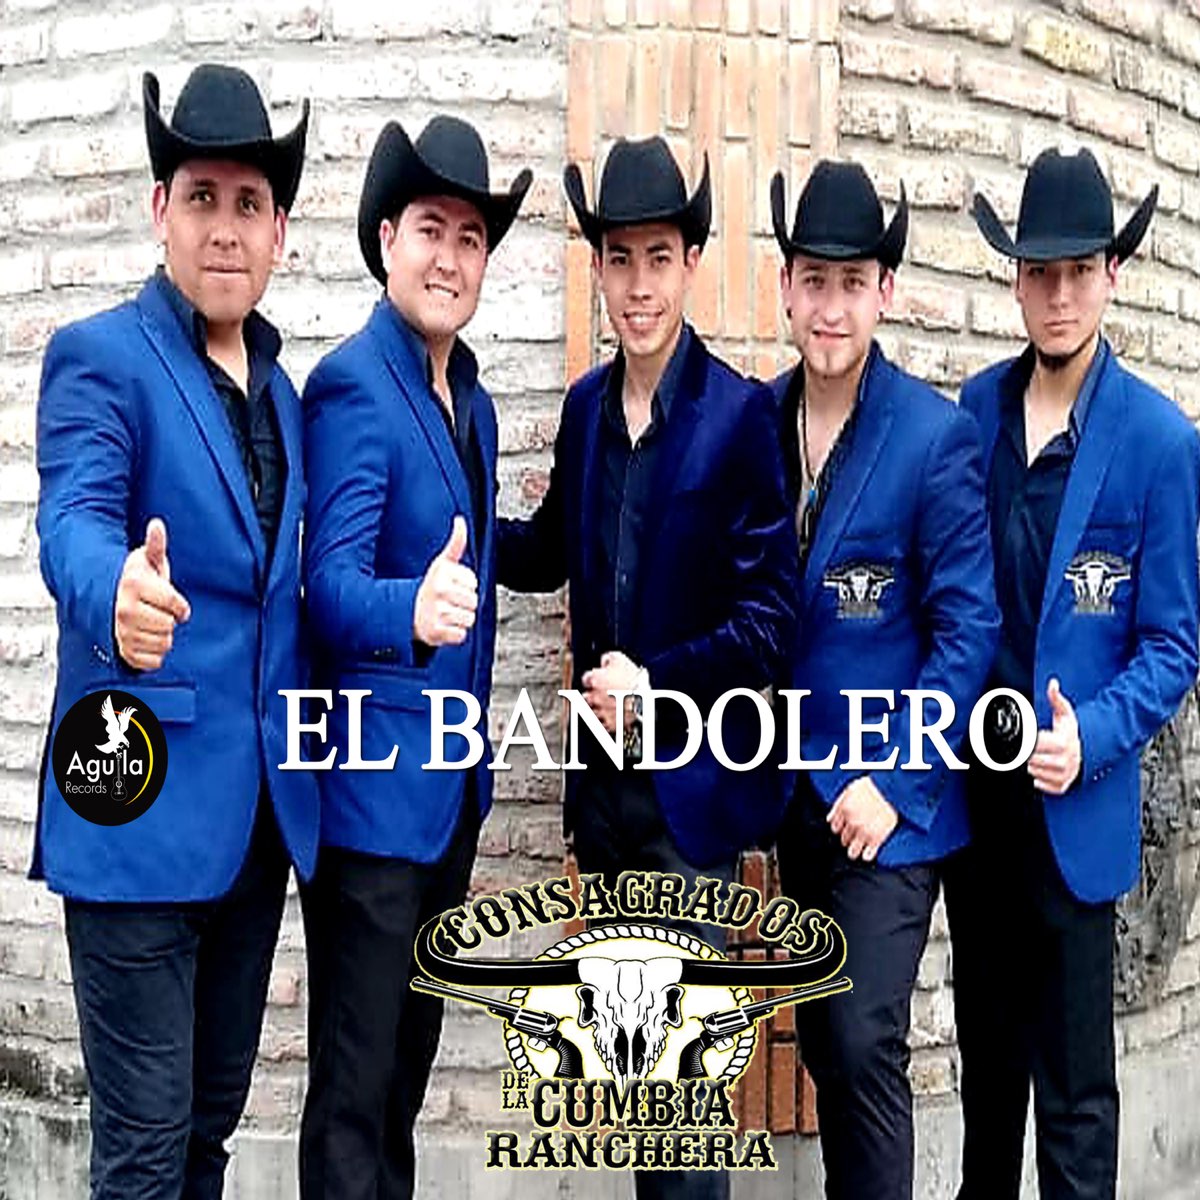 EL Bandolero - Single by CONSAGRADOS DE LA CUMBIA RANCHERA on Apple Music